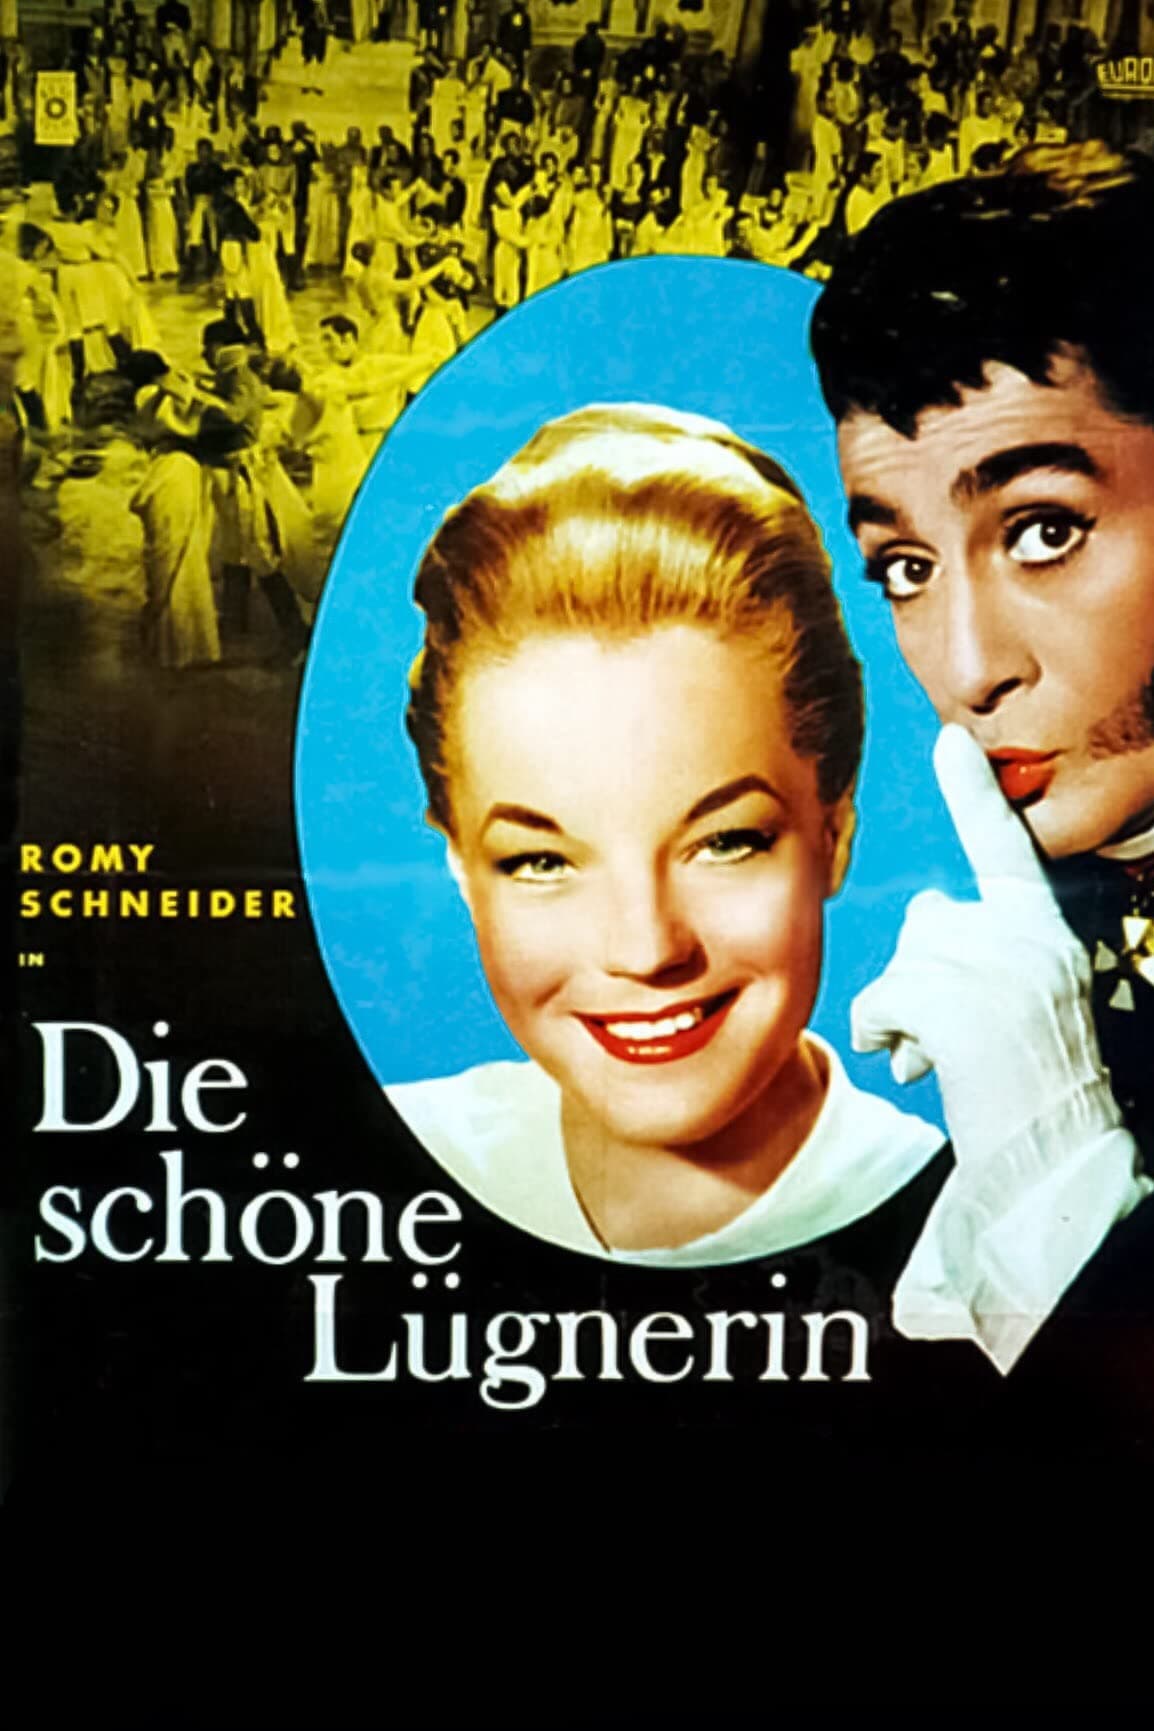 Die schöne Lügnerin (1959)